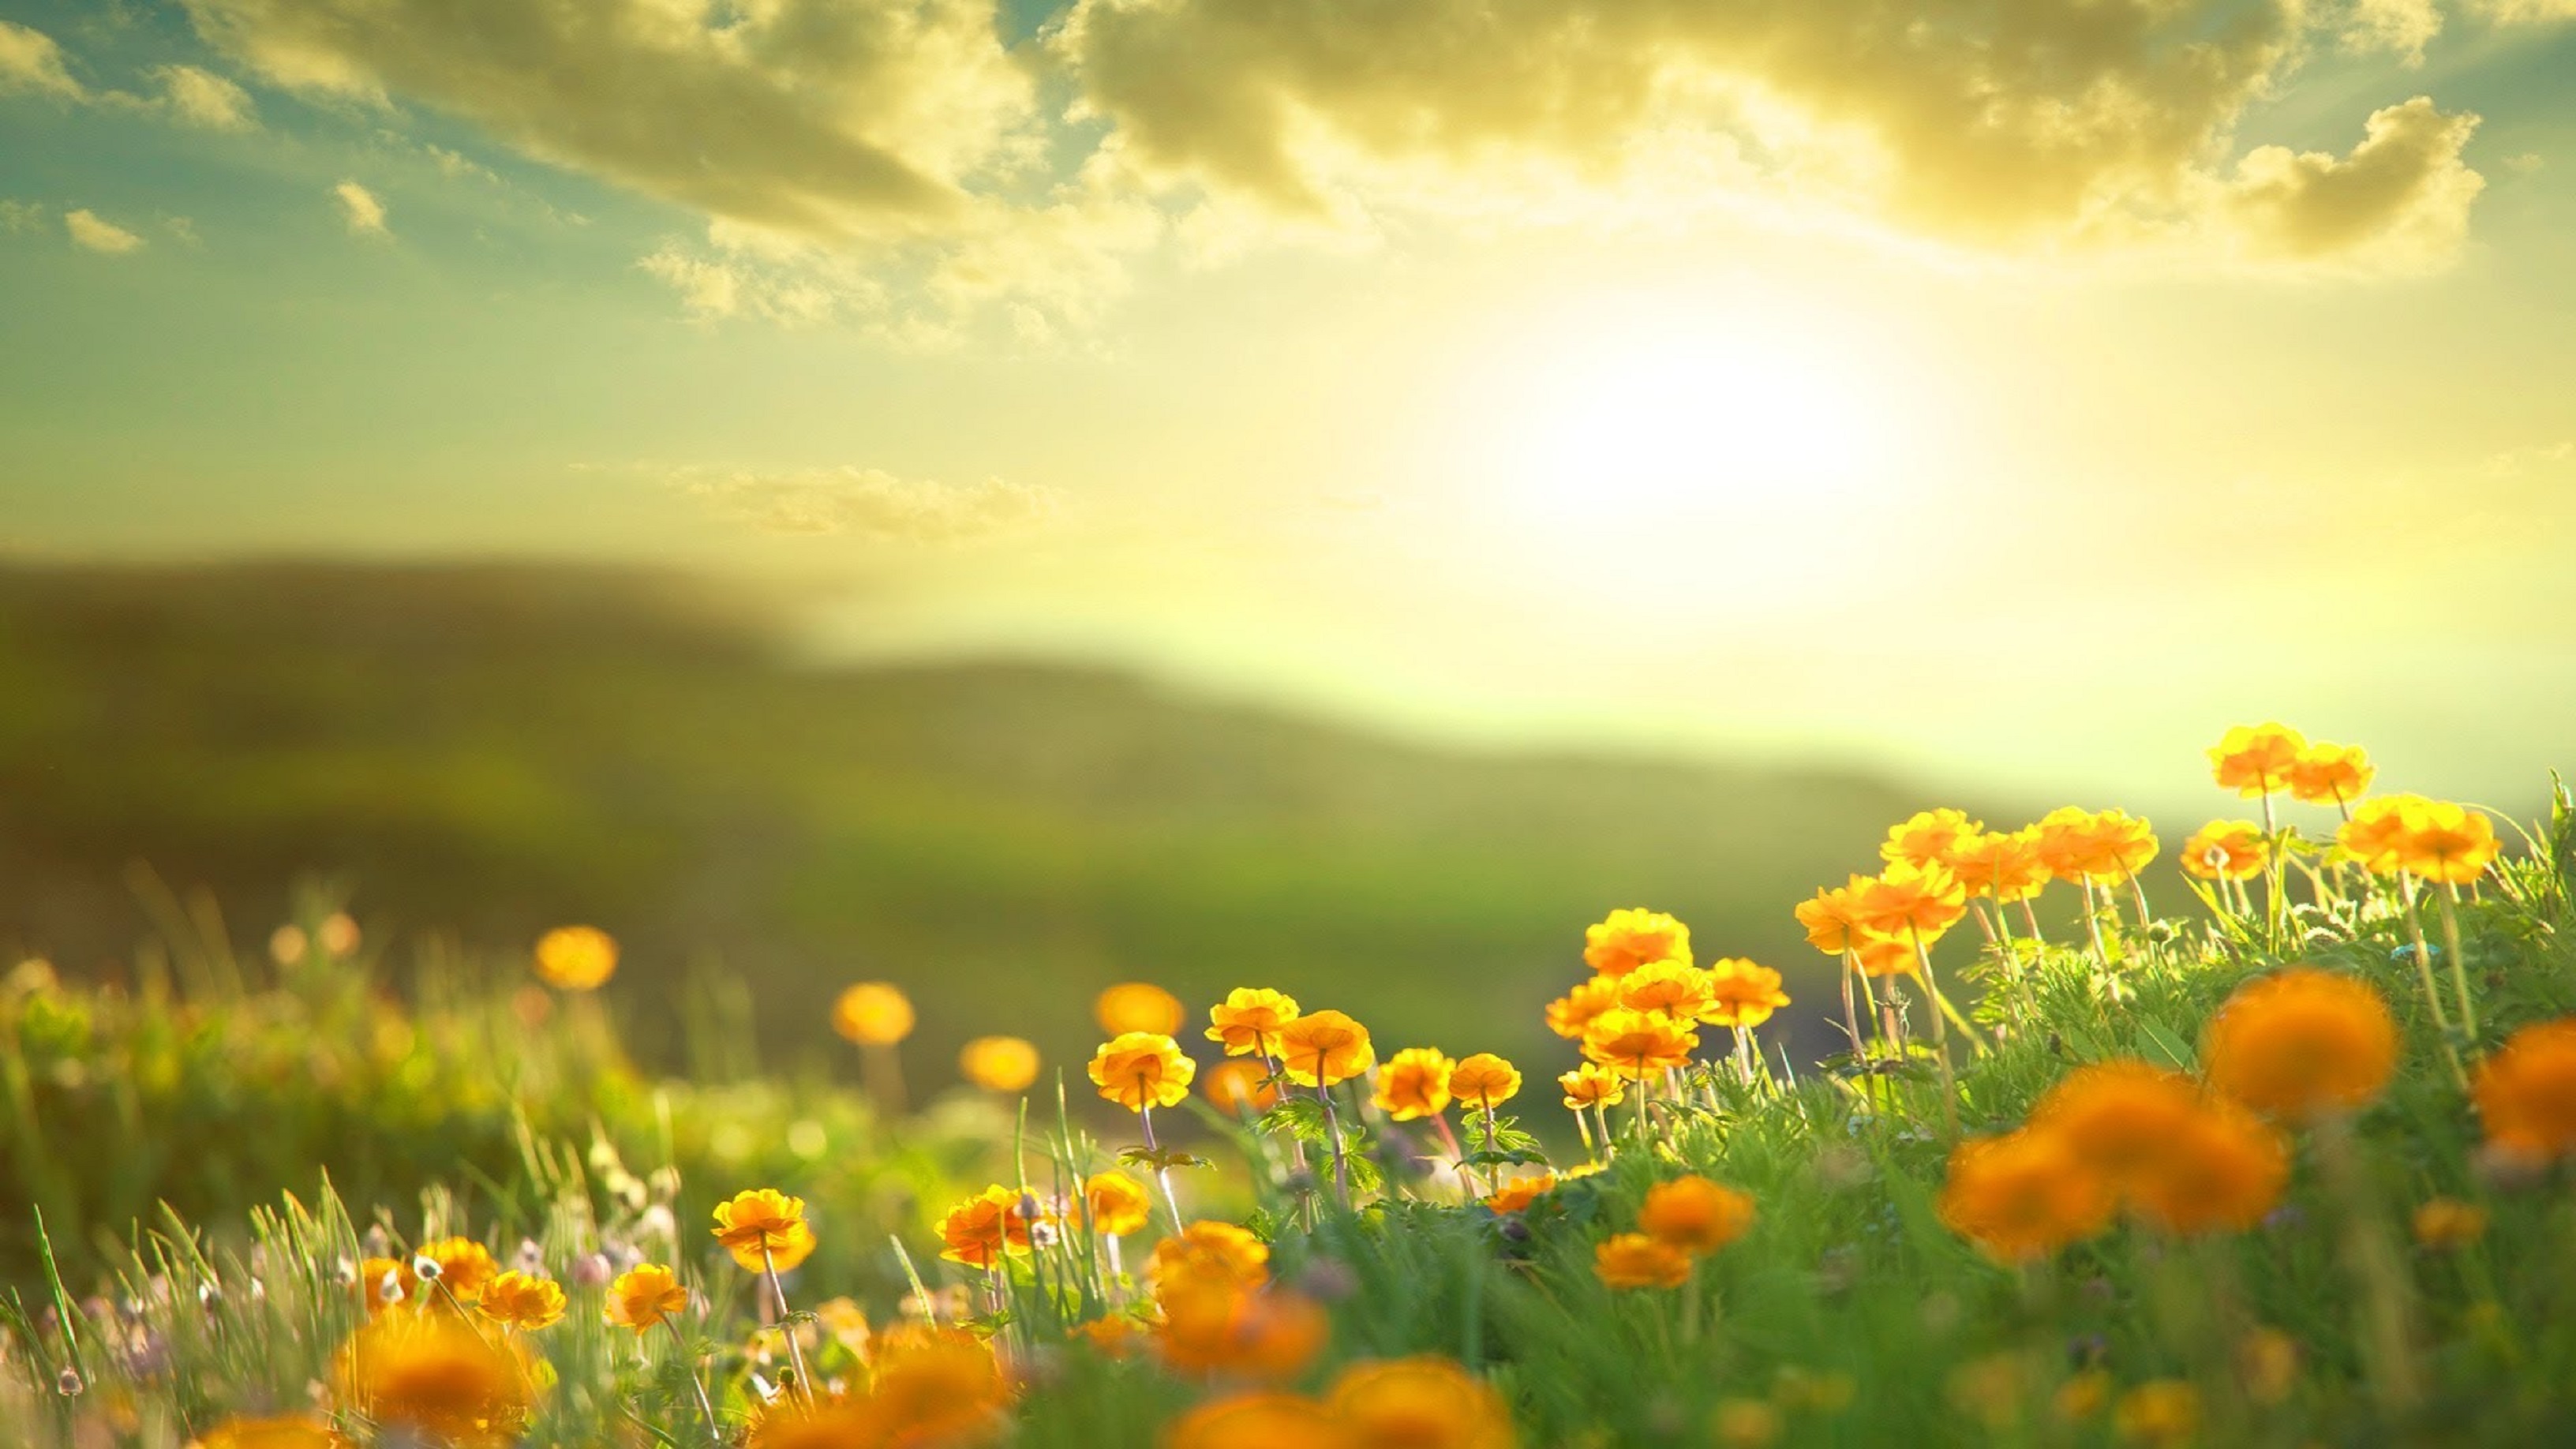 Tia nắng vàng rực rỡ, sánh bước cùng những đóa hoa mới nở, tạo nên một bức tranh sắc màu thiên nhiên đặc biệt. Hình ảnh nắng vàng này sẽ đem đến cho bạn một trải nghiệm mới lạ, cảm nhận mùa xuân tươi đẹp và tự do bay bổng những ước mơ của mình.